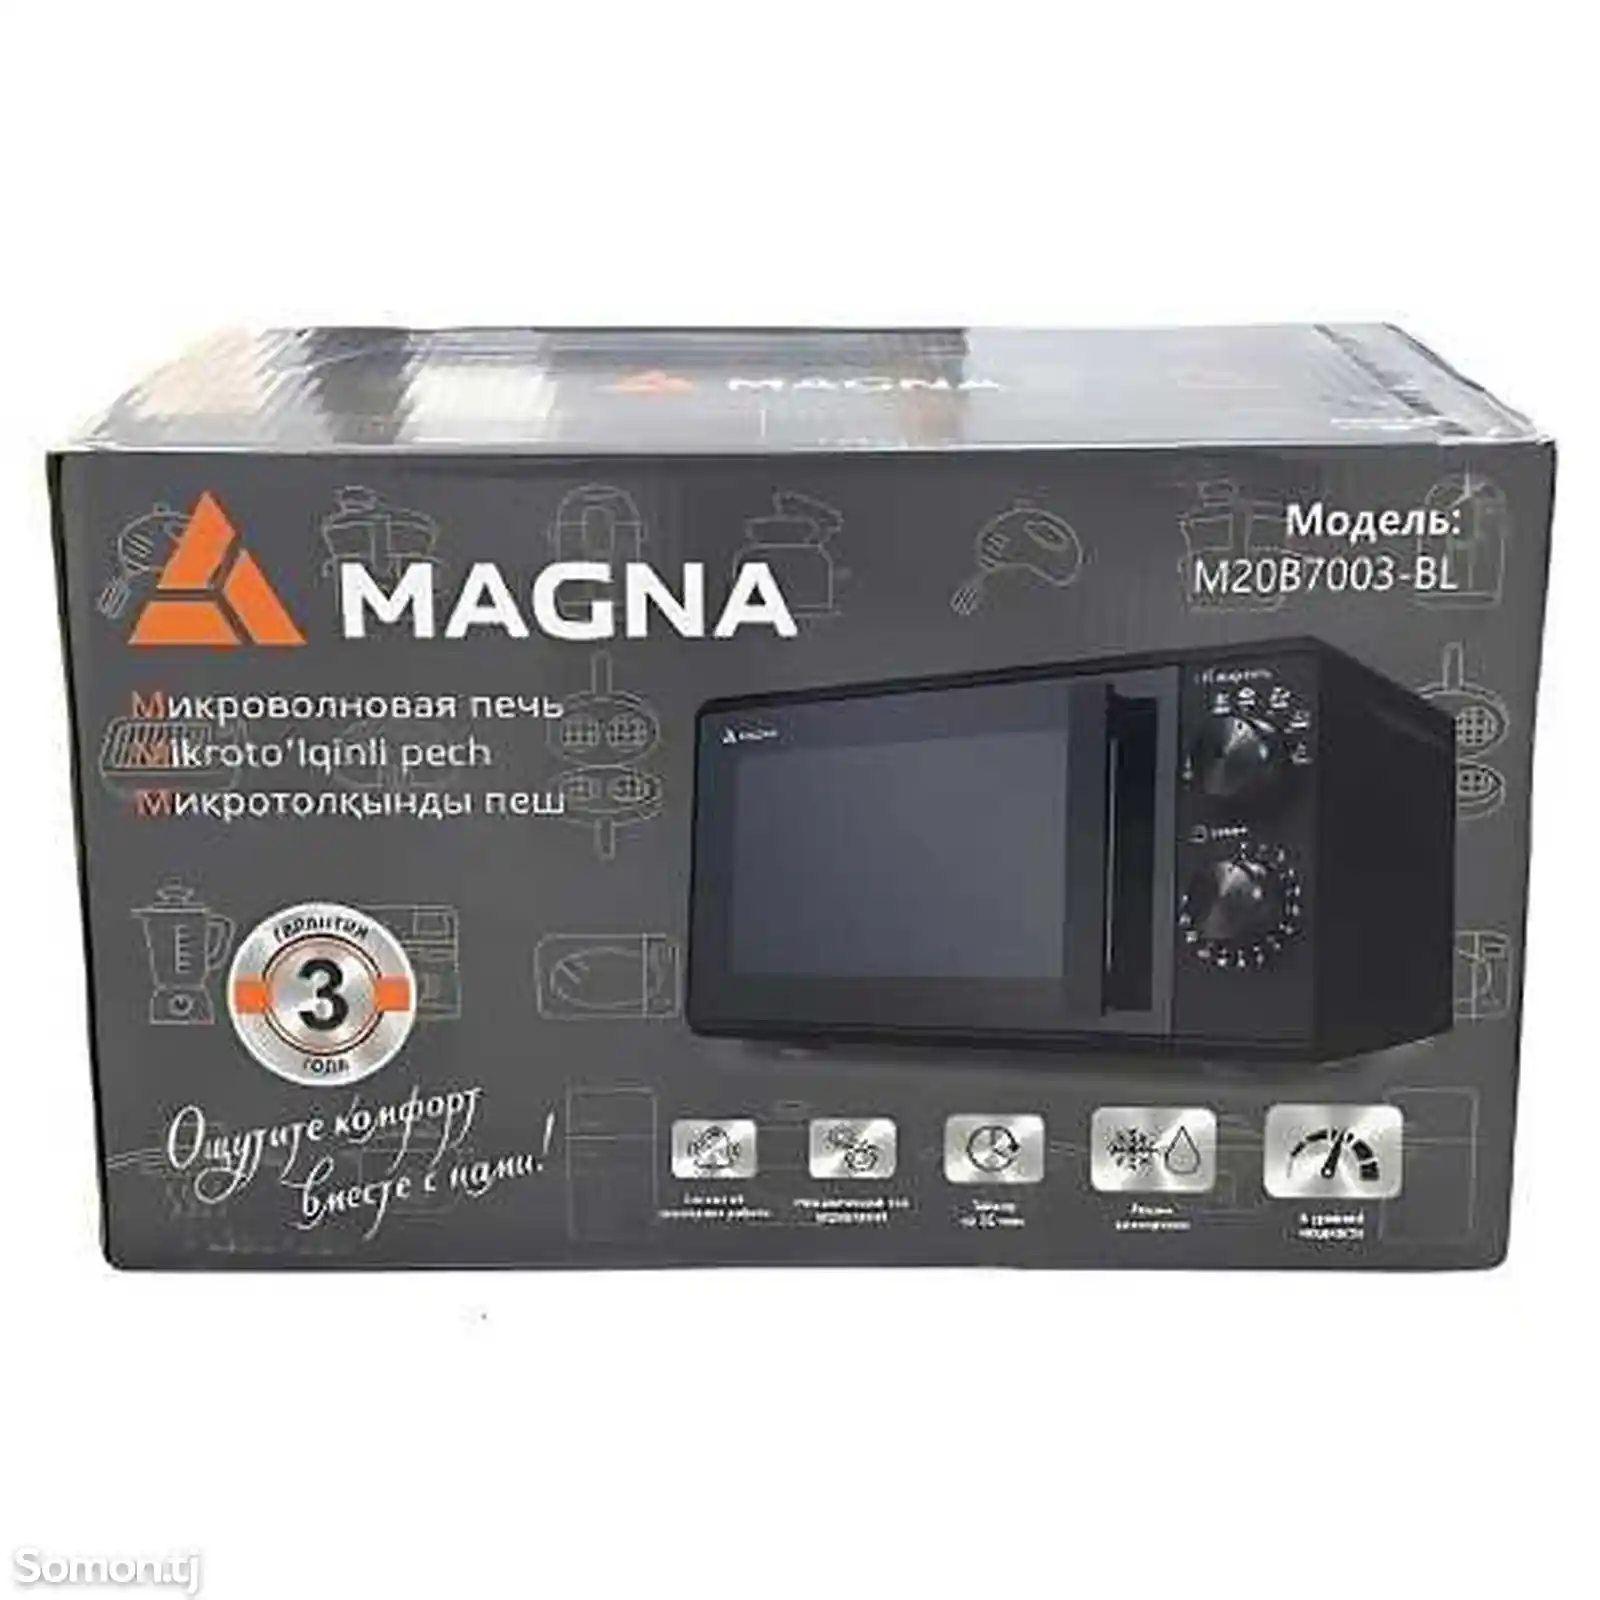 Микроволновая печь Magna-1